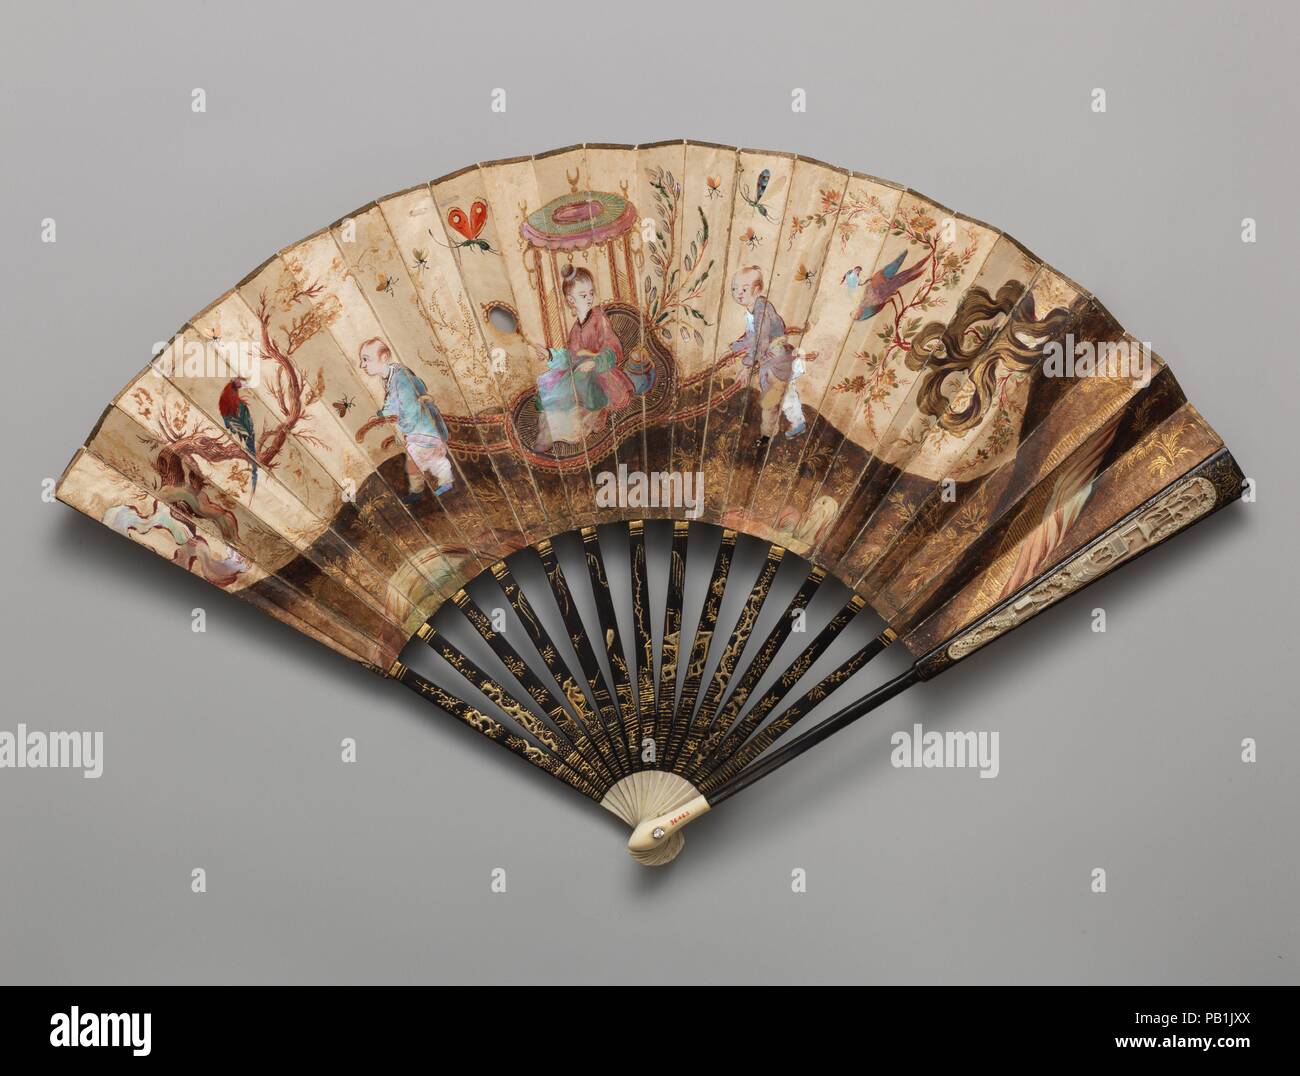 Ventilateur. Culture : le chinois. Dimensions : 11 3/4 x 20 3/4 in. (29,8 x 52,7 cm). Date : milieu du 18ème siècle. Musée : Metropolitan Museum of Art, New York, USA. Banque D'Images